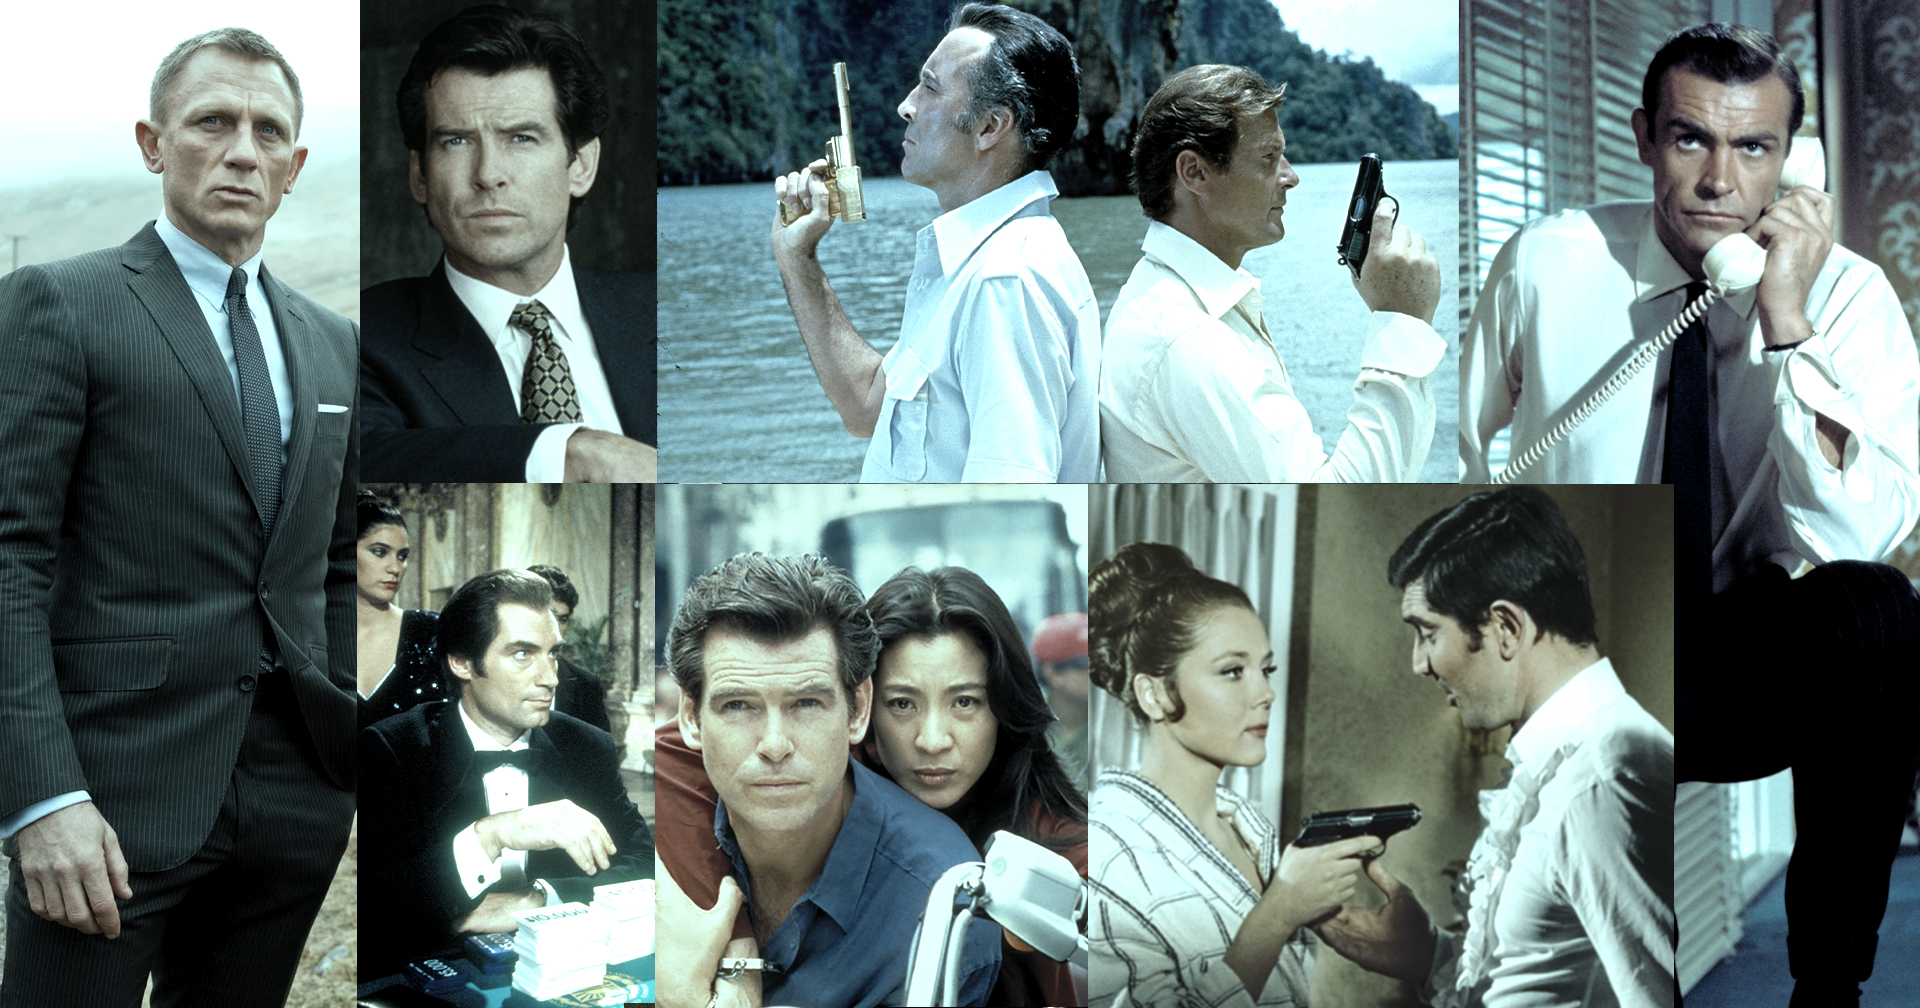 ลิสต์รวบรัดหนังชุดสายลับ เจมส์ บอนด์ 007 ครบทั้ง 25 ภาค